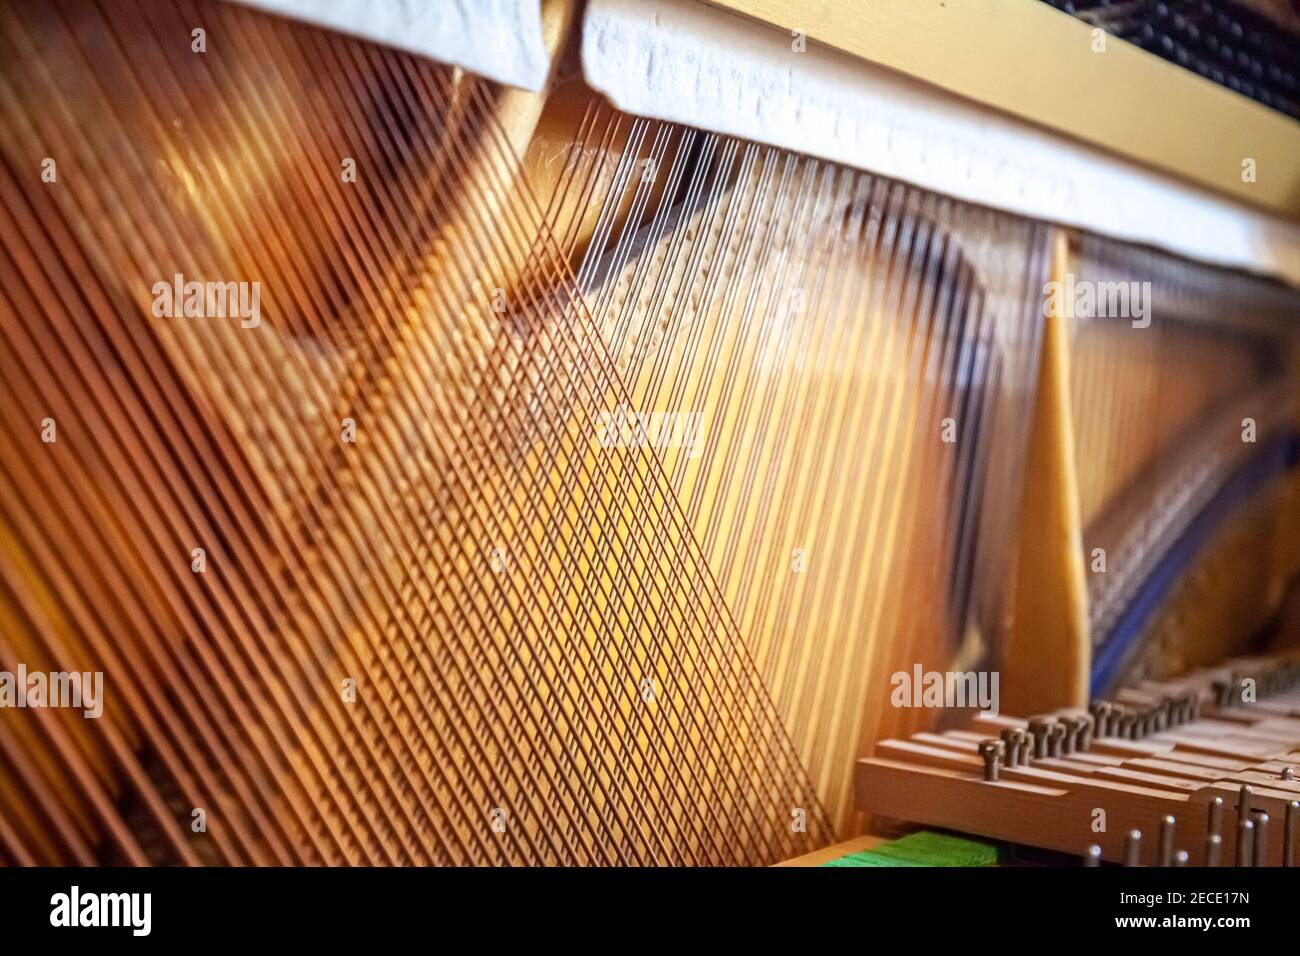 Upright piano strings. Open piano. Piano sound board. Piano frame. Copper strings. Piano service. Stock Photo